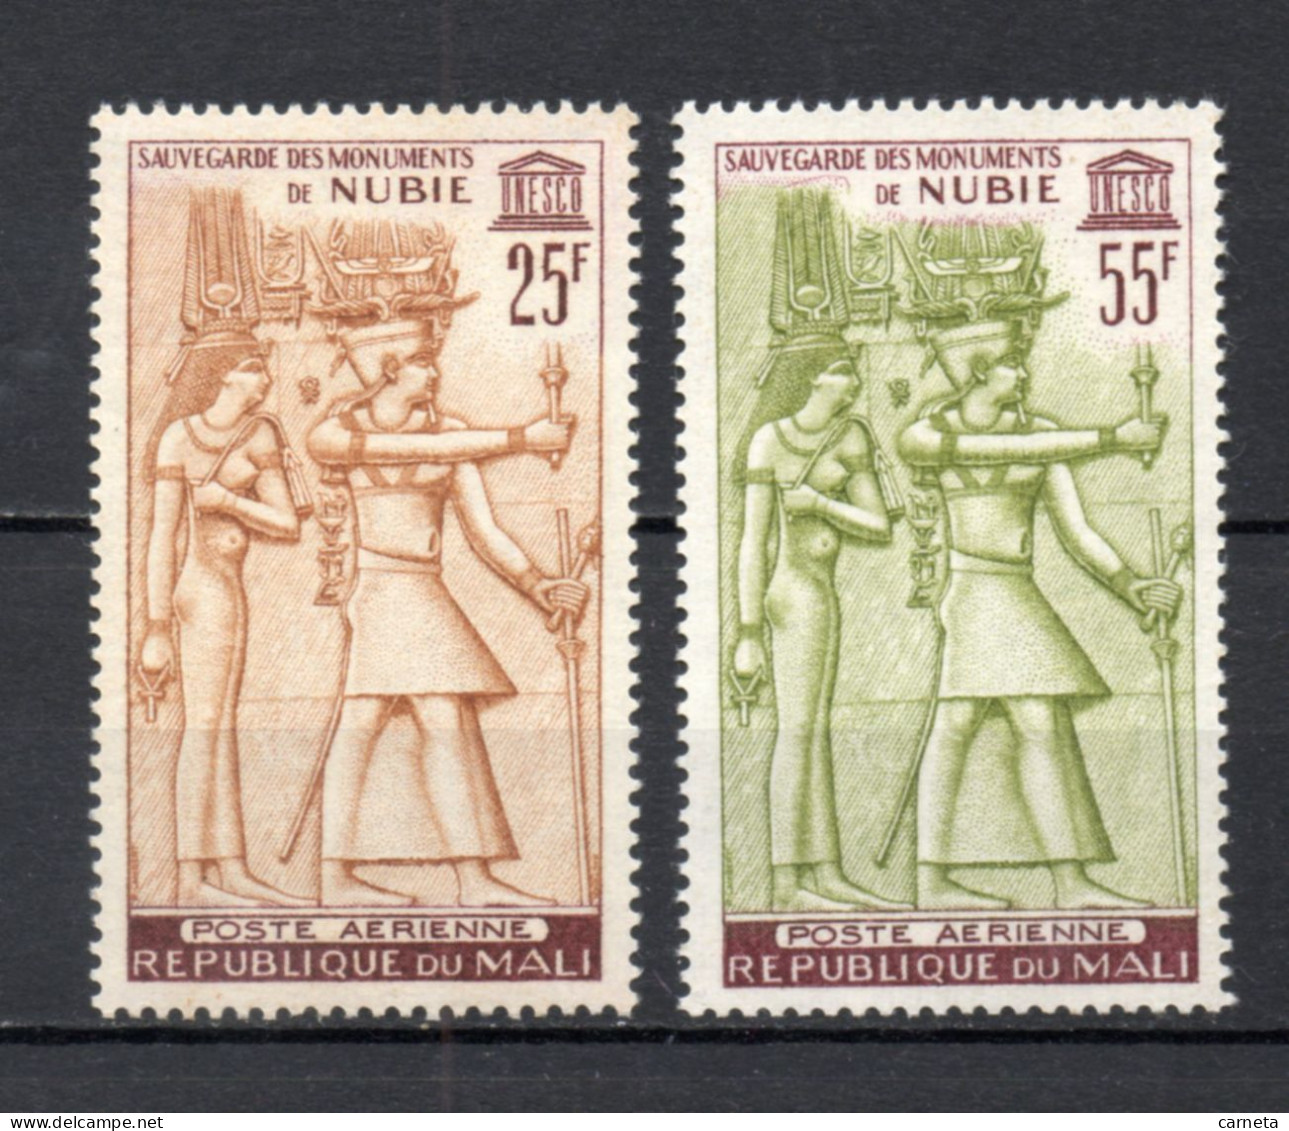 MALI  PA  N° 22 + 23    NEUFS SANS CHARNIERE  COTE 3.50€    MONUMENTS DE NUBIE - Mali (1959-...)